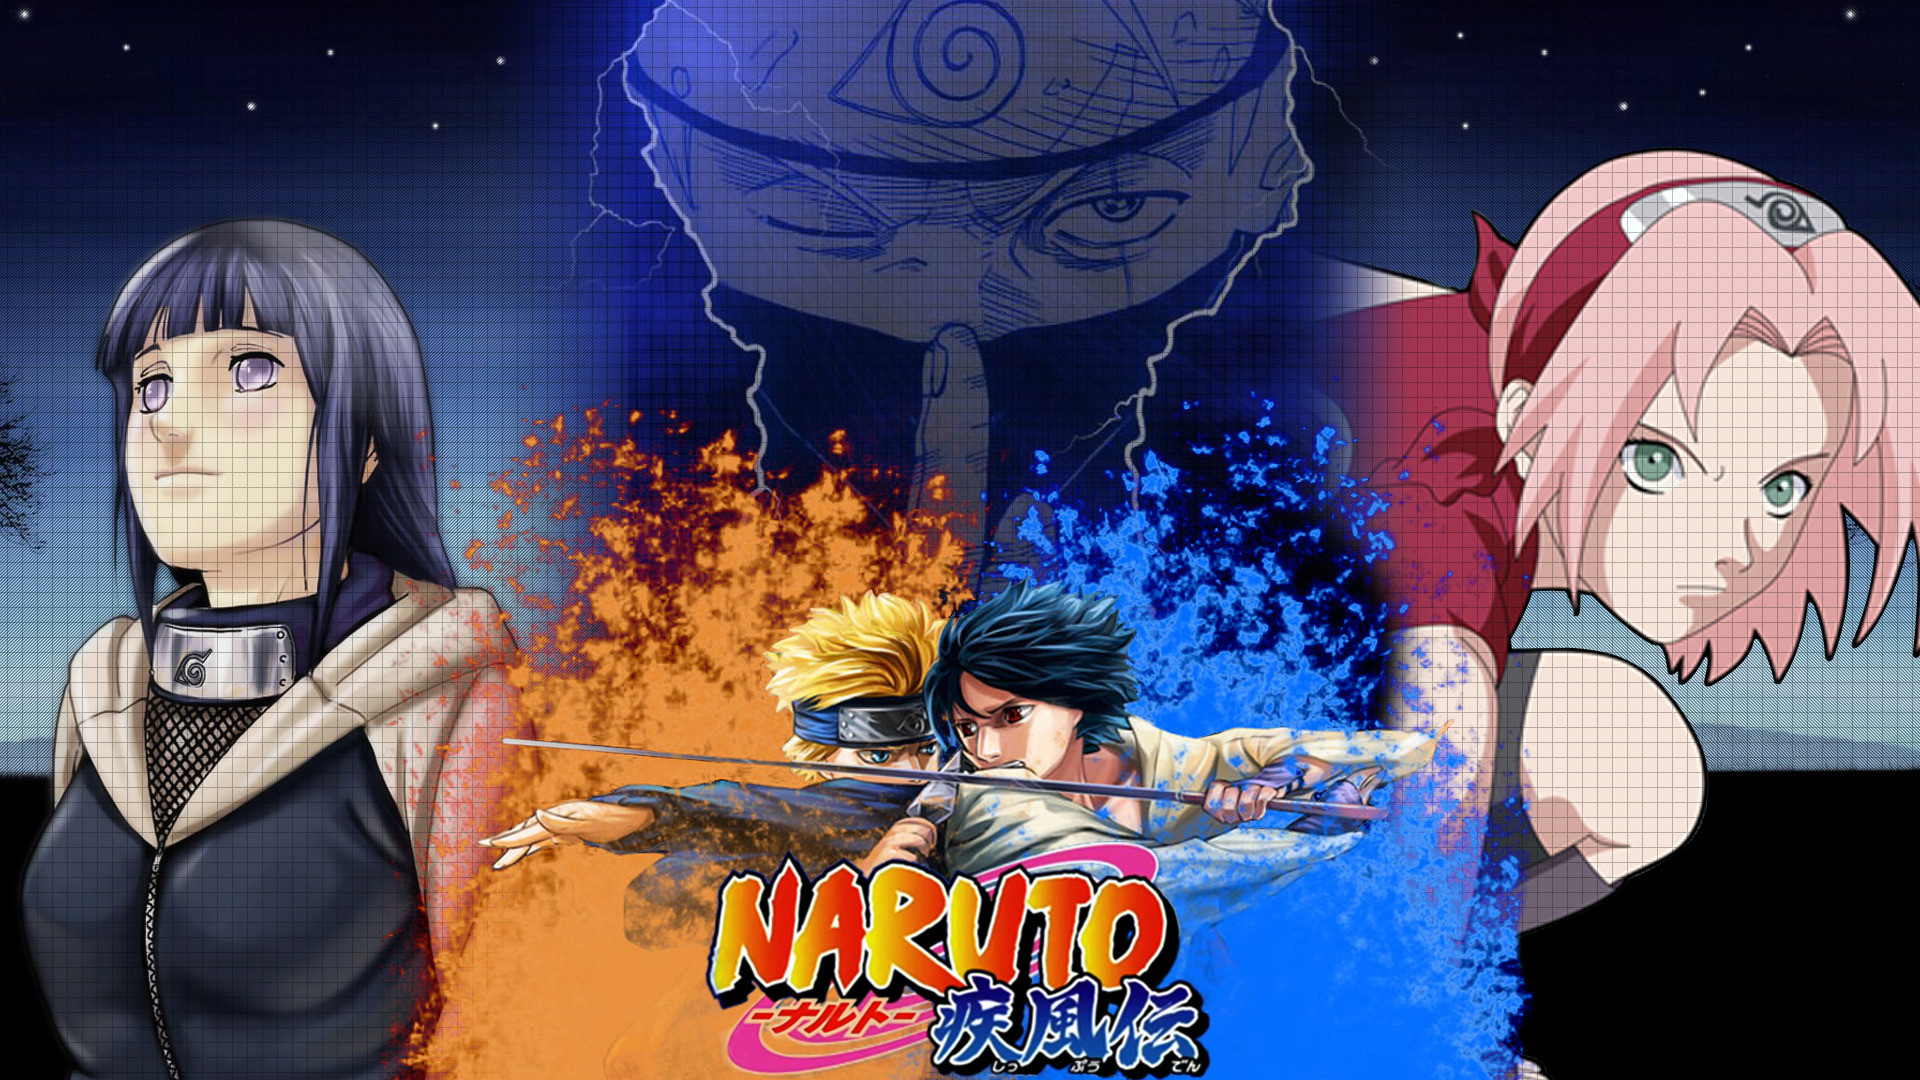 1920x1080 Naruto vs Sasuke - Naruto Shippuden wallpaper #4631